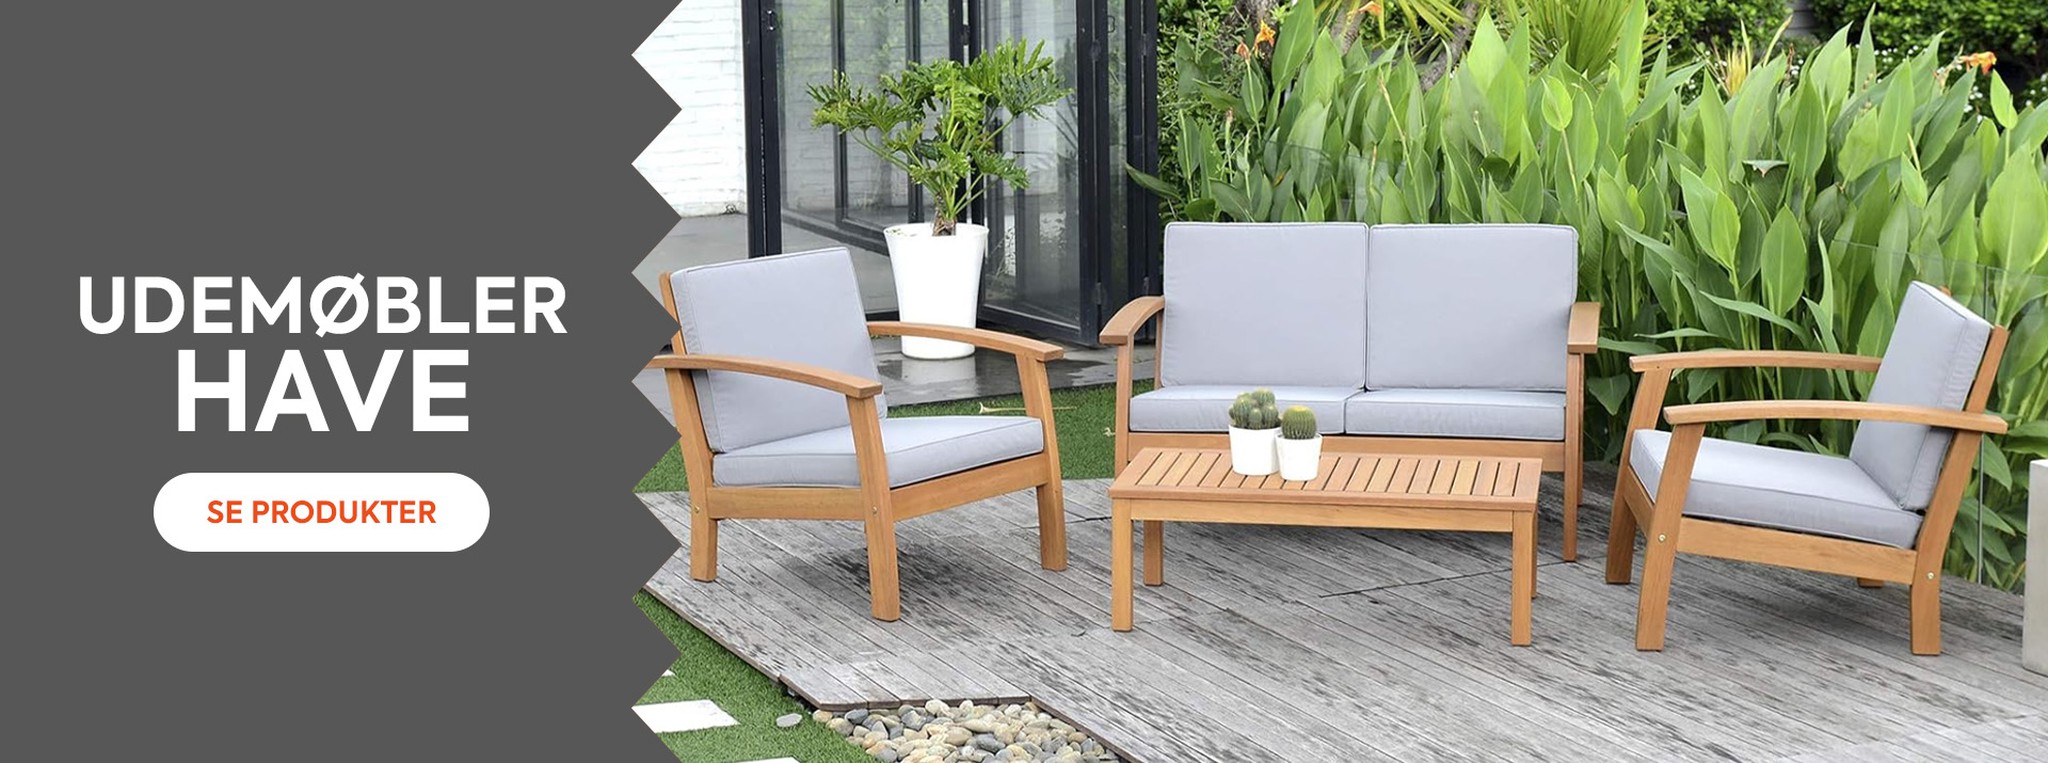 Oplev vores kollektion af havemøbler for at nyde dit hjem denne sommer